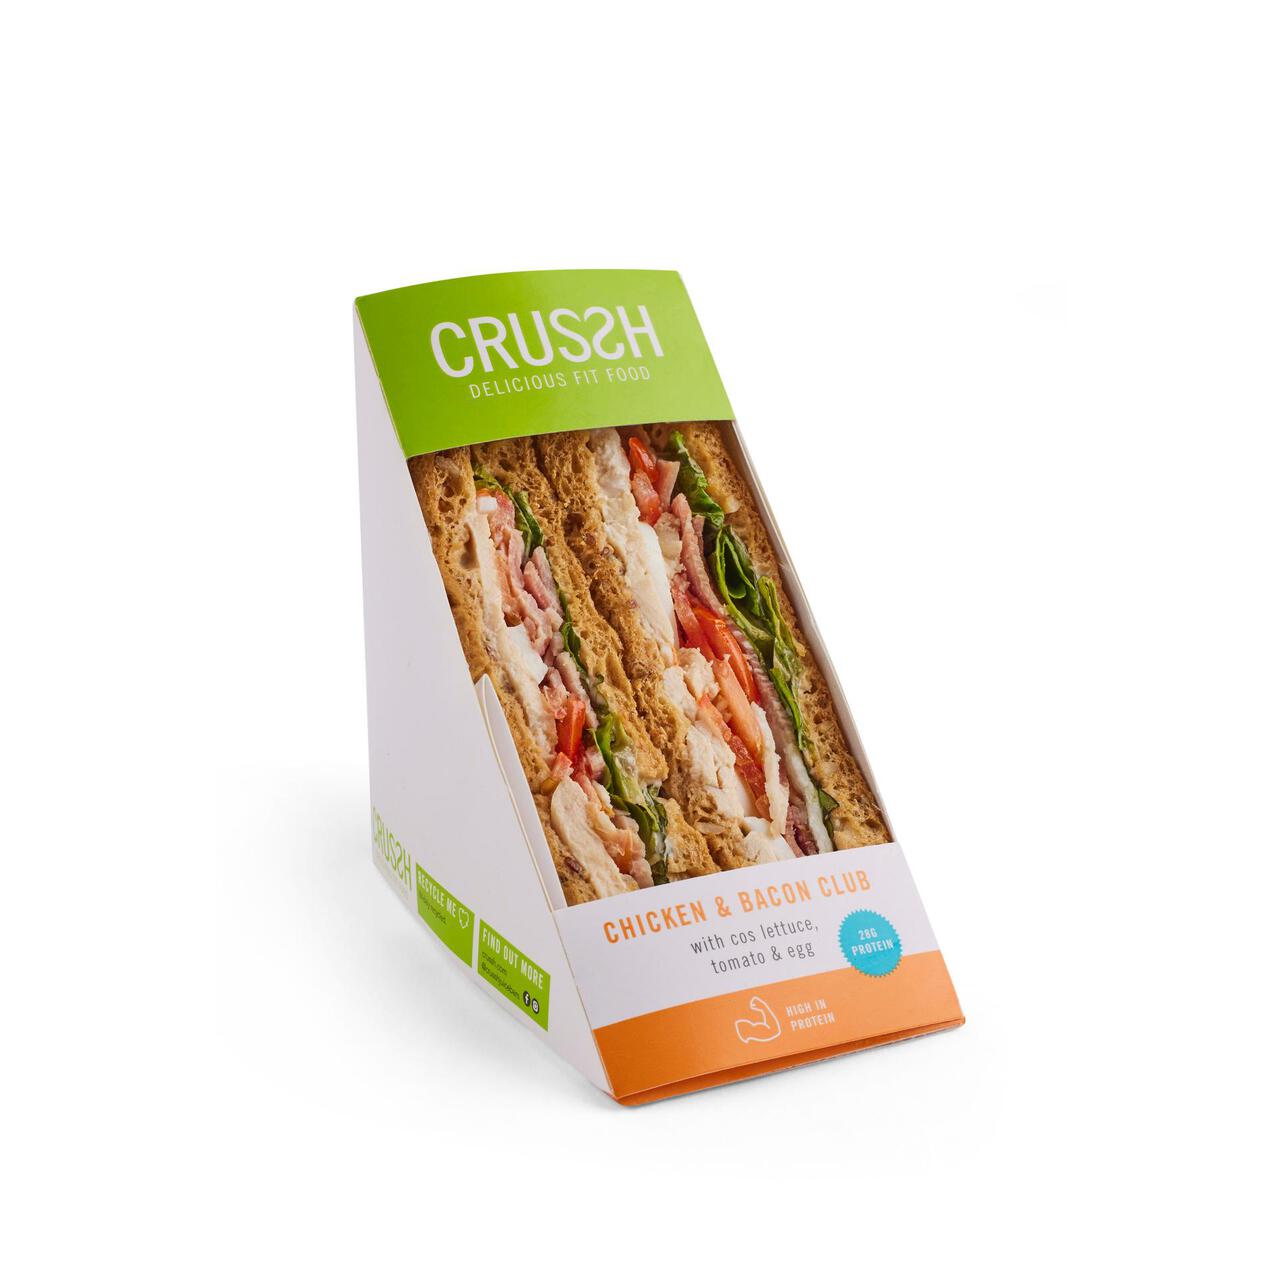 Crussh Chicken & Bacon Club Sandwich